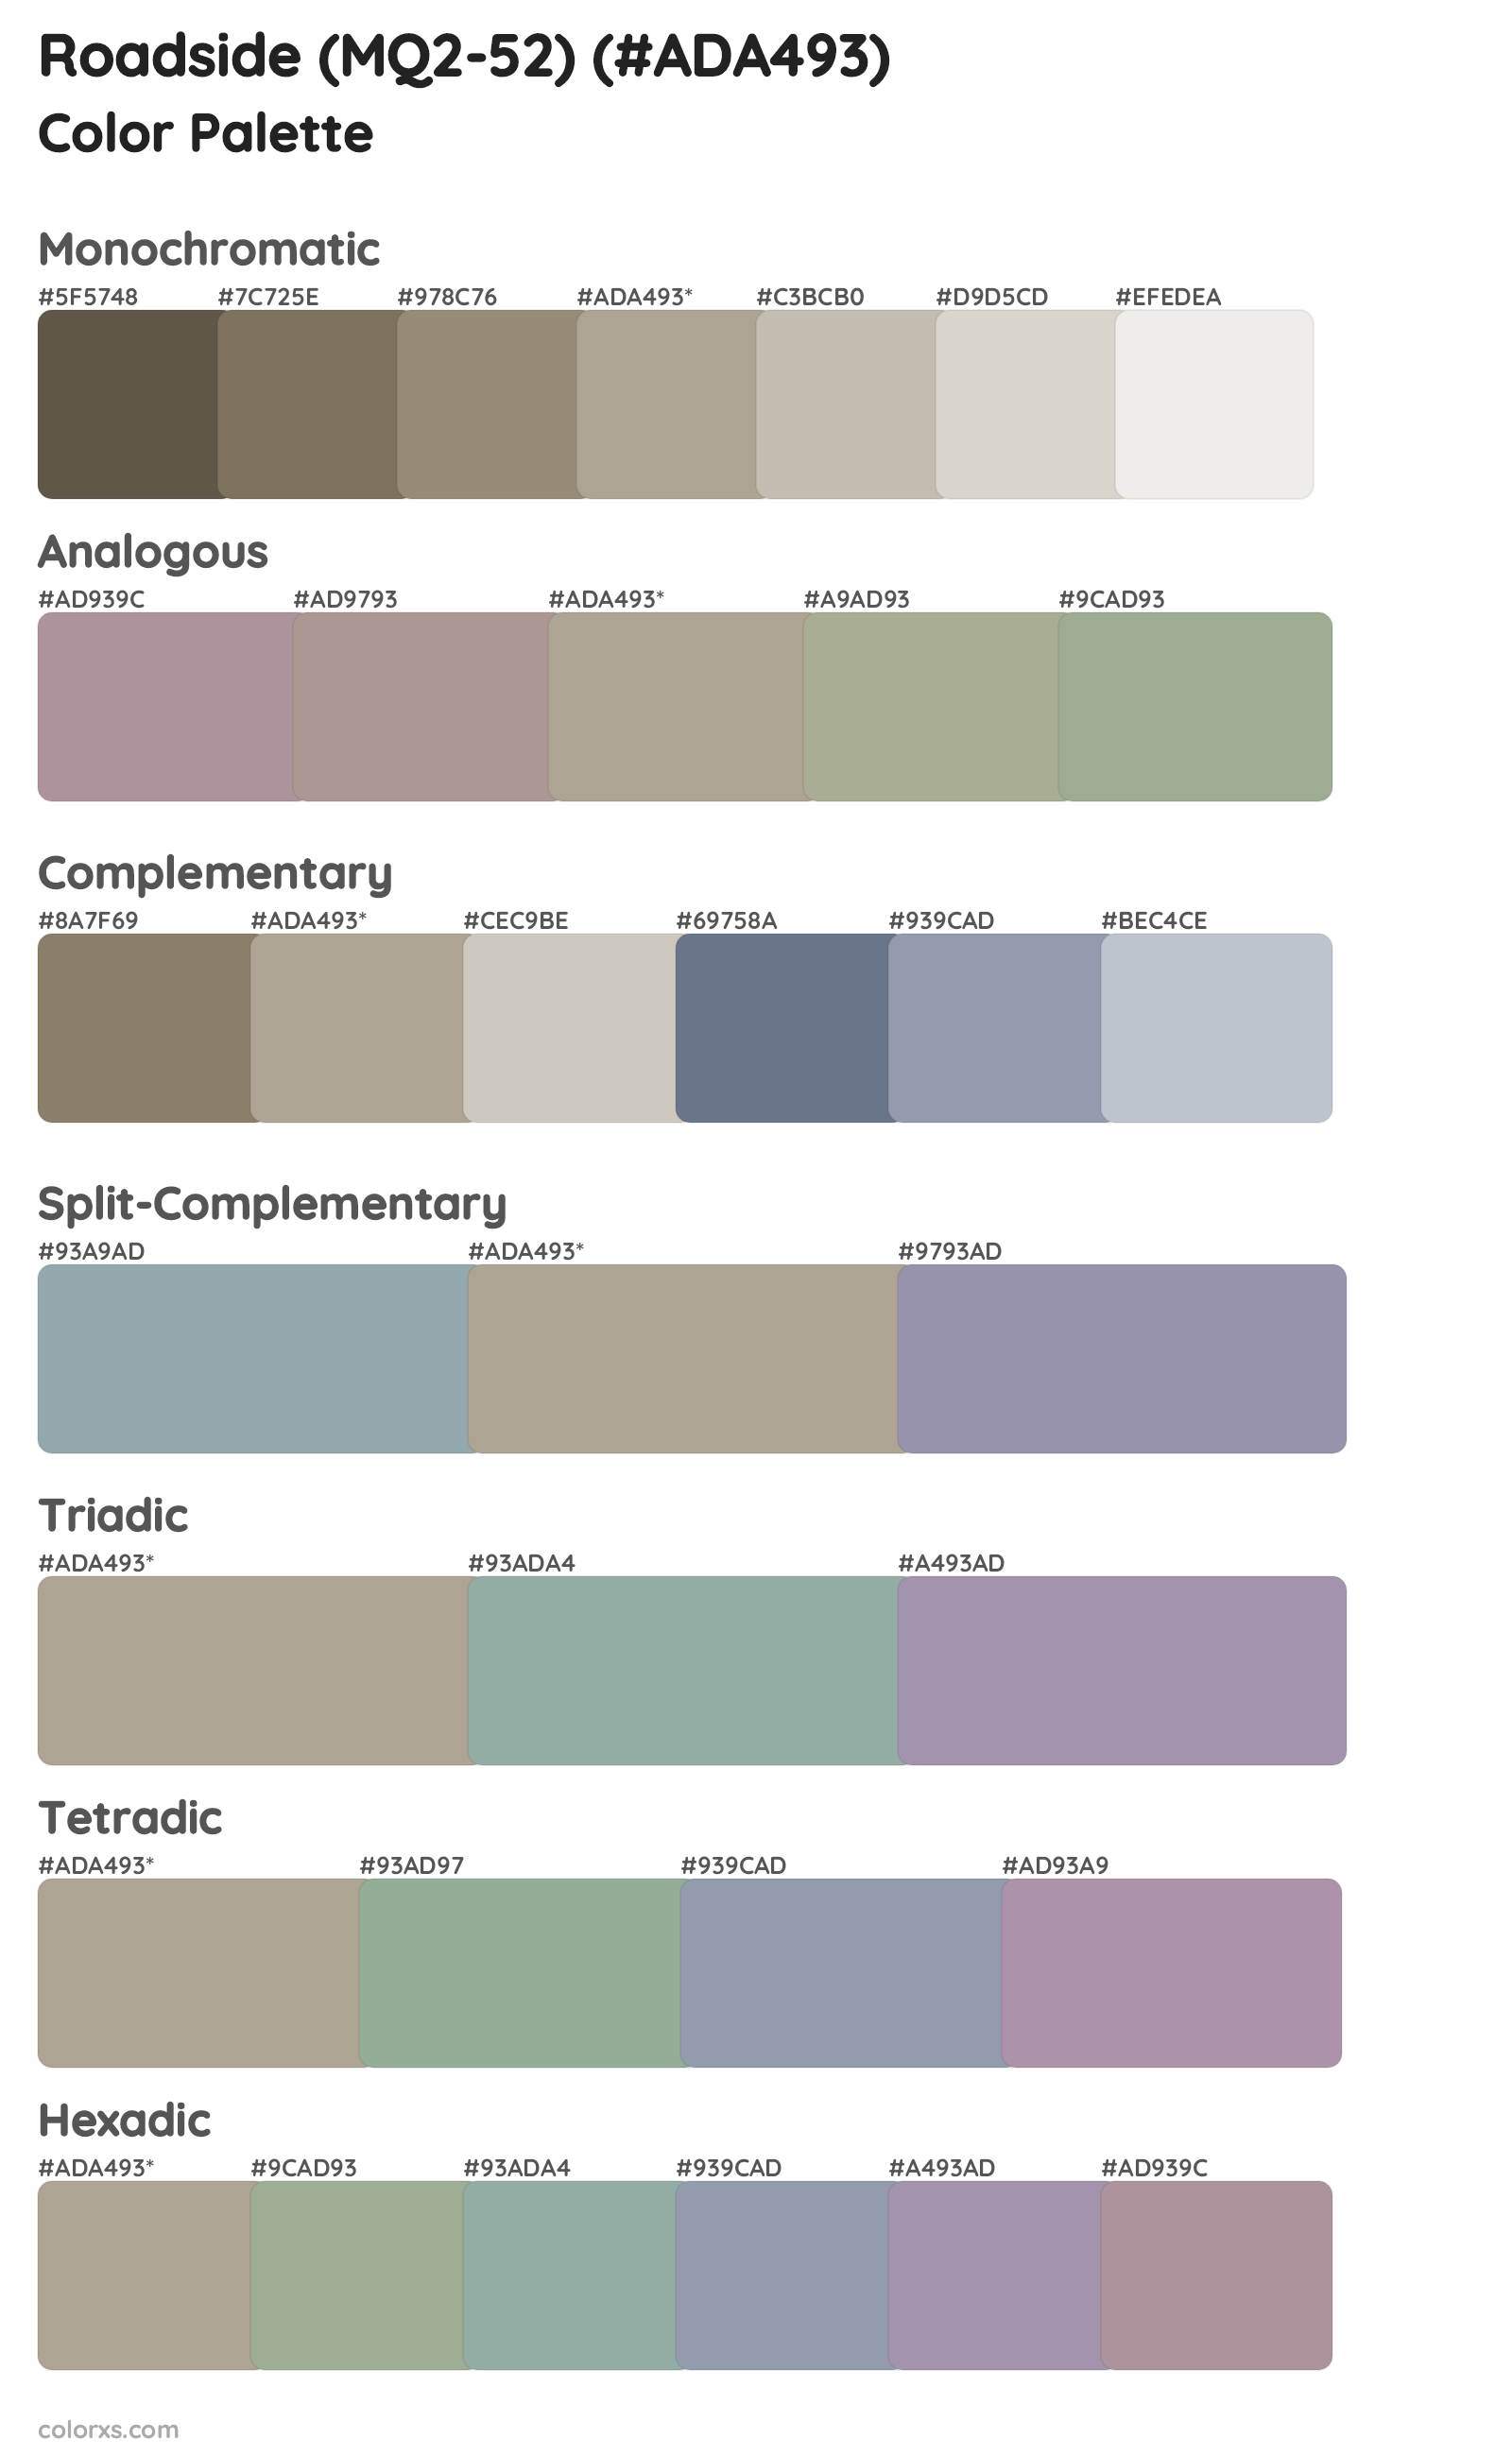 Roadside (MQ2-52) Color Scheme Palettes